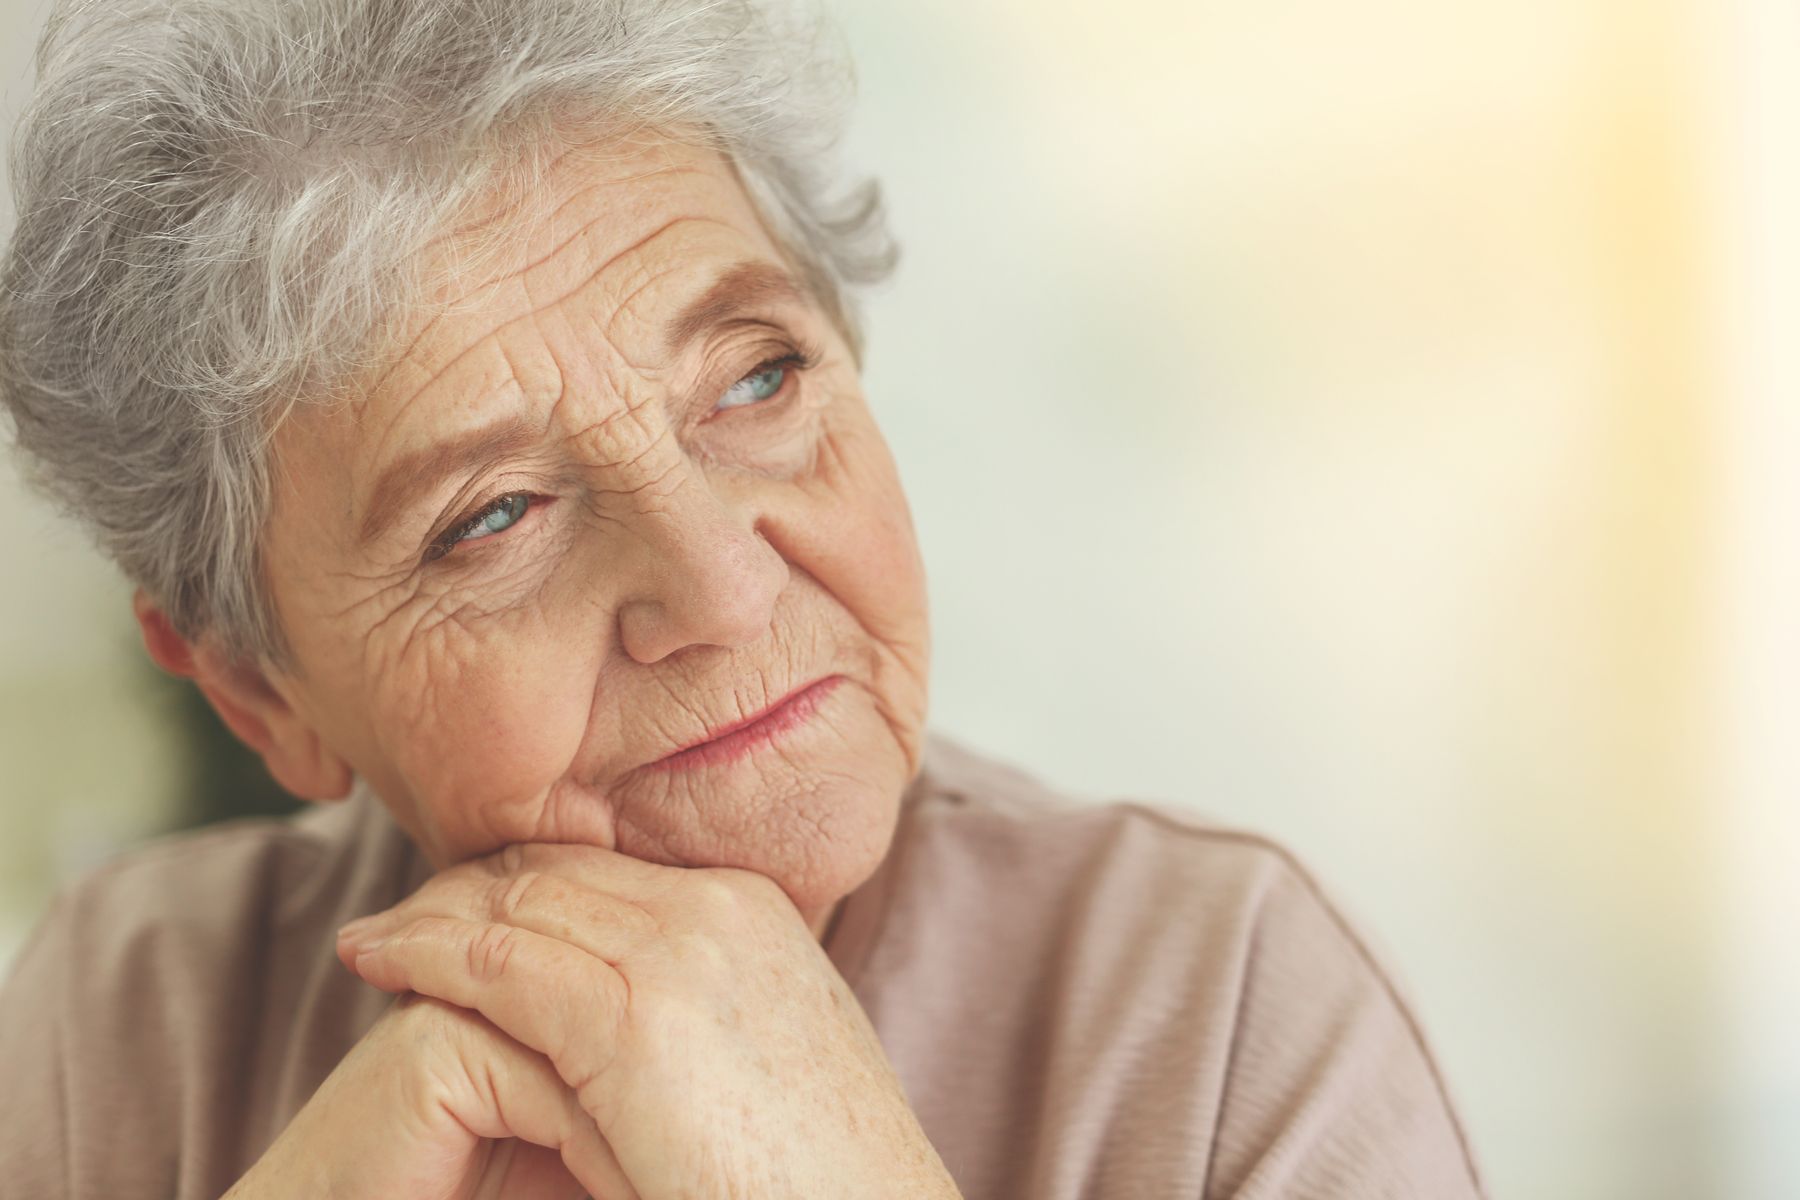 La dépression chez les personnes âgées : un enjeu de santé publique souvent sous-estimé